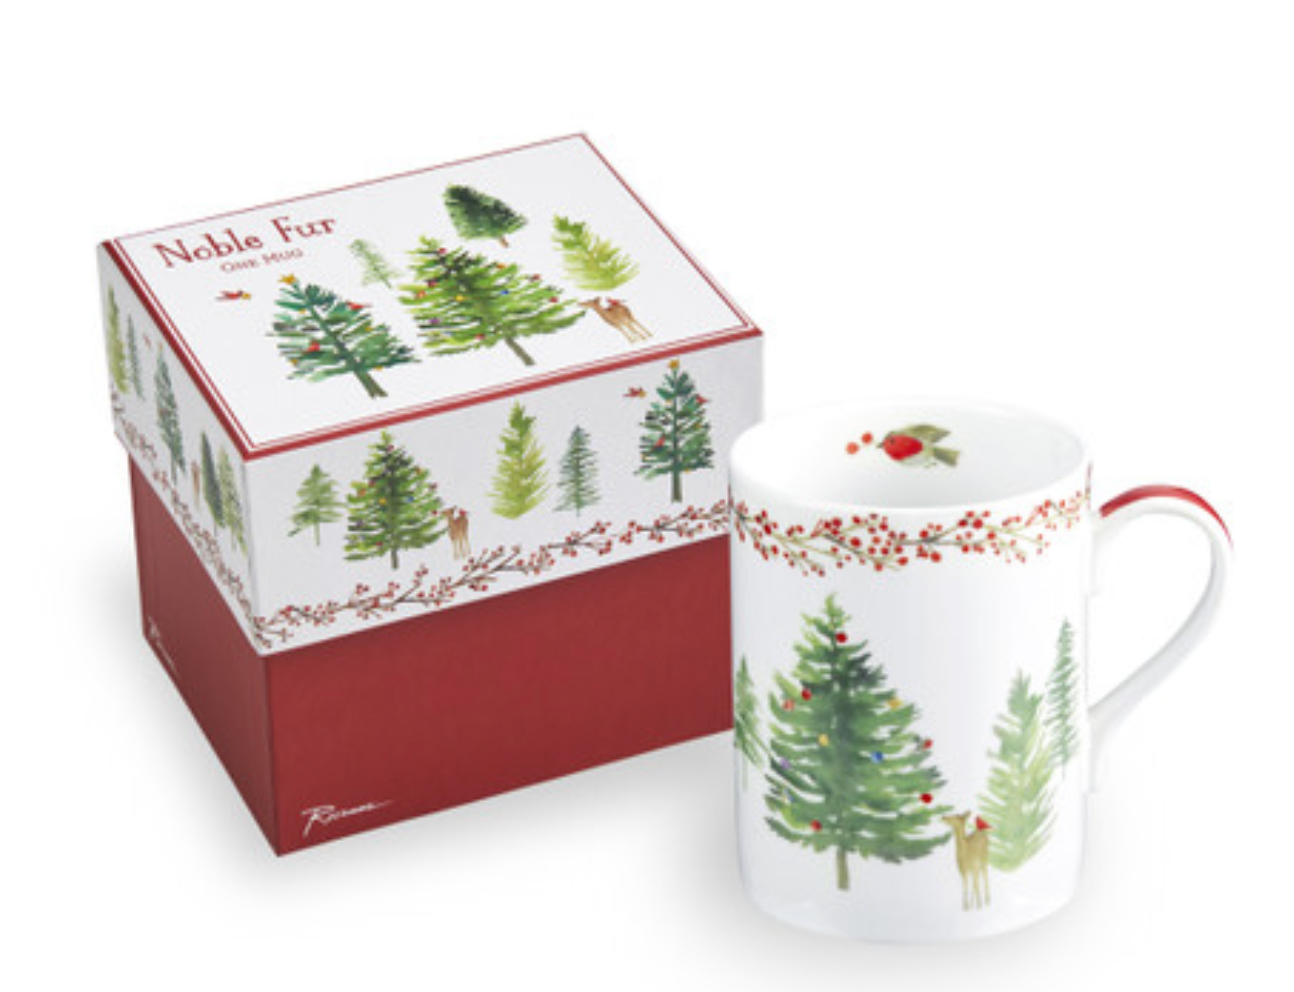 Noble Fur Christmas Mug In Gift Box